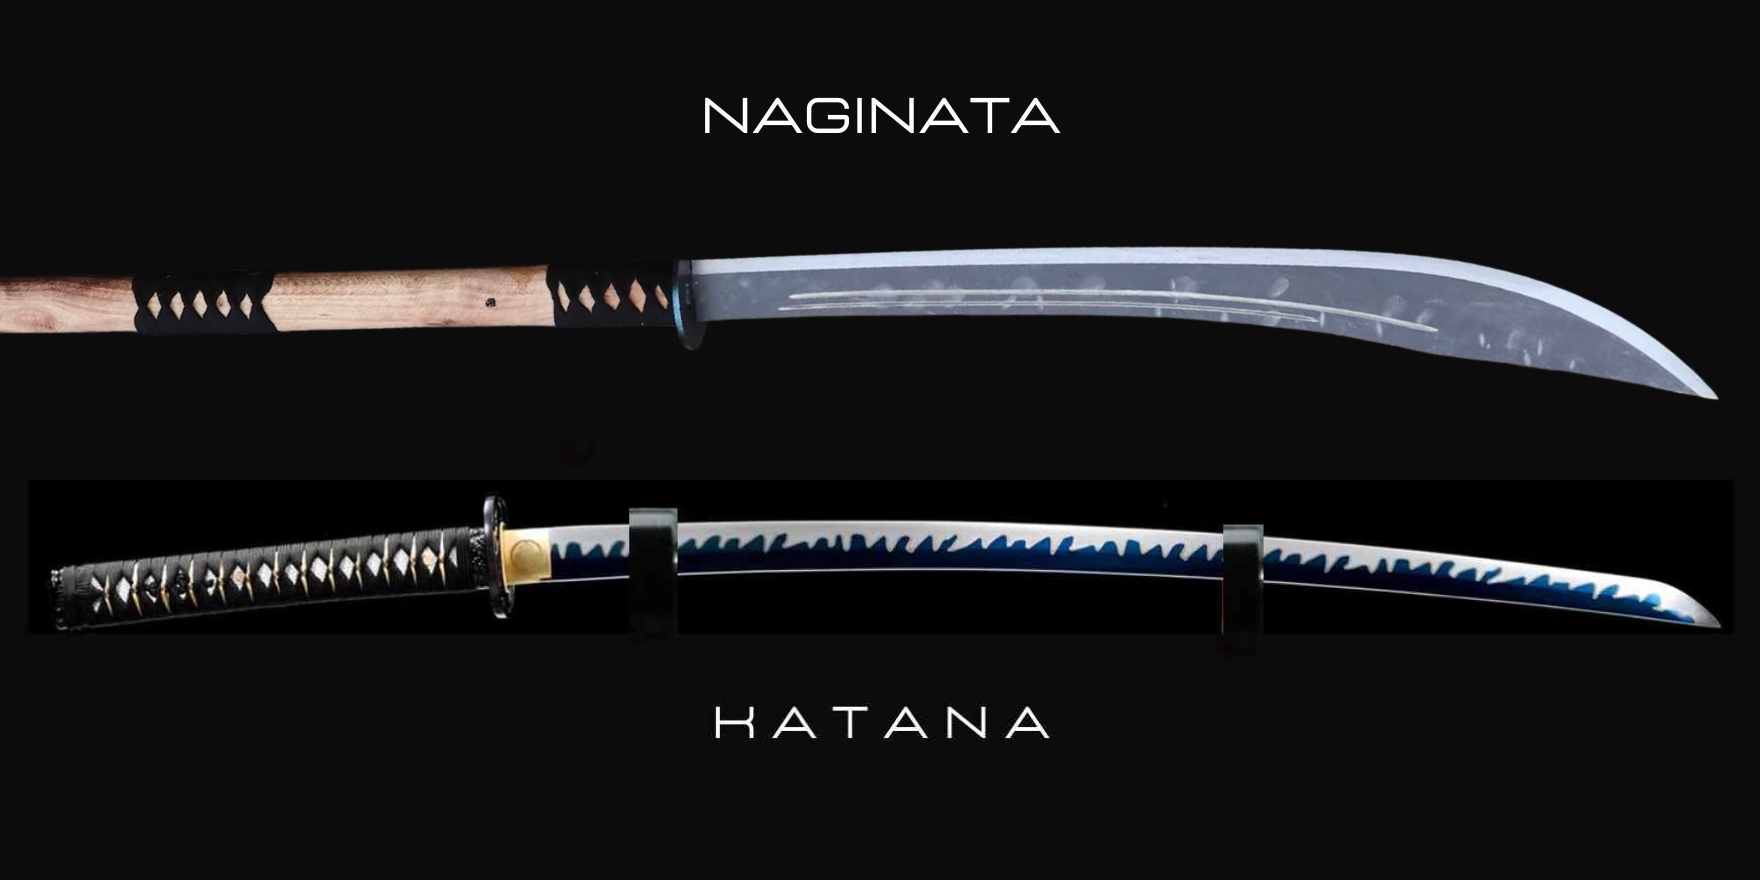 naginata vs katana